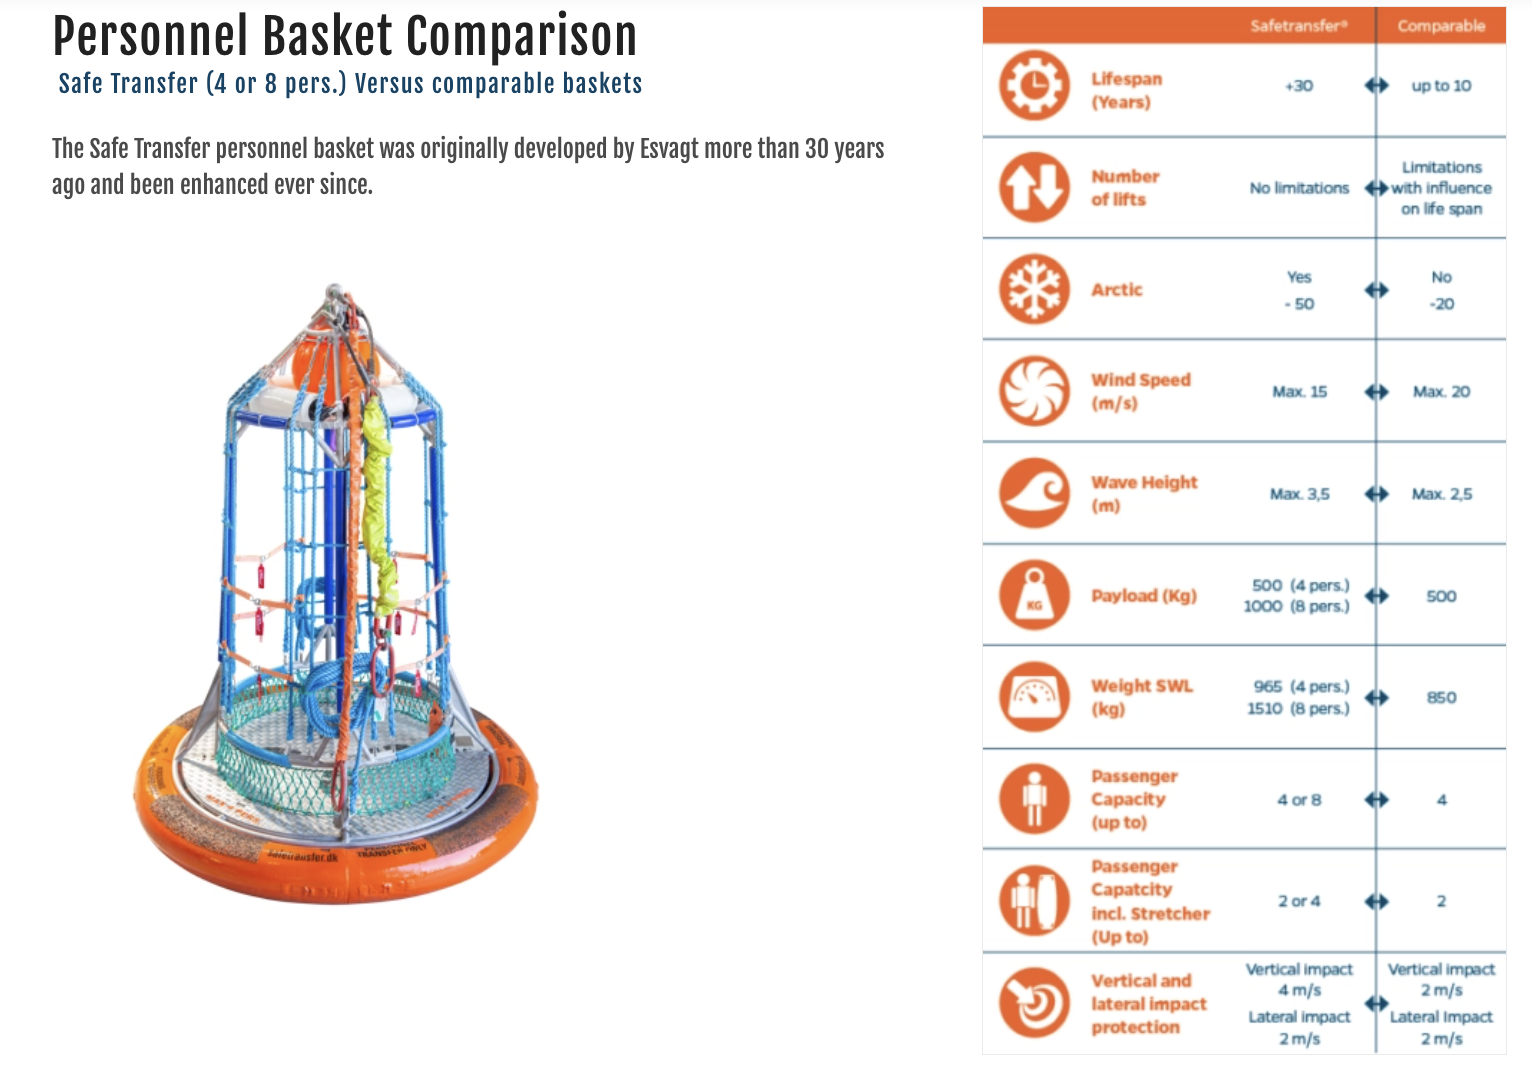 Personnel Basket Comparison